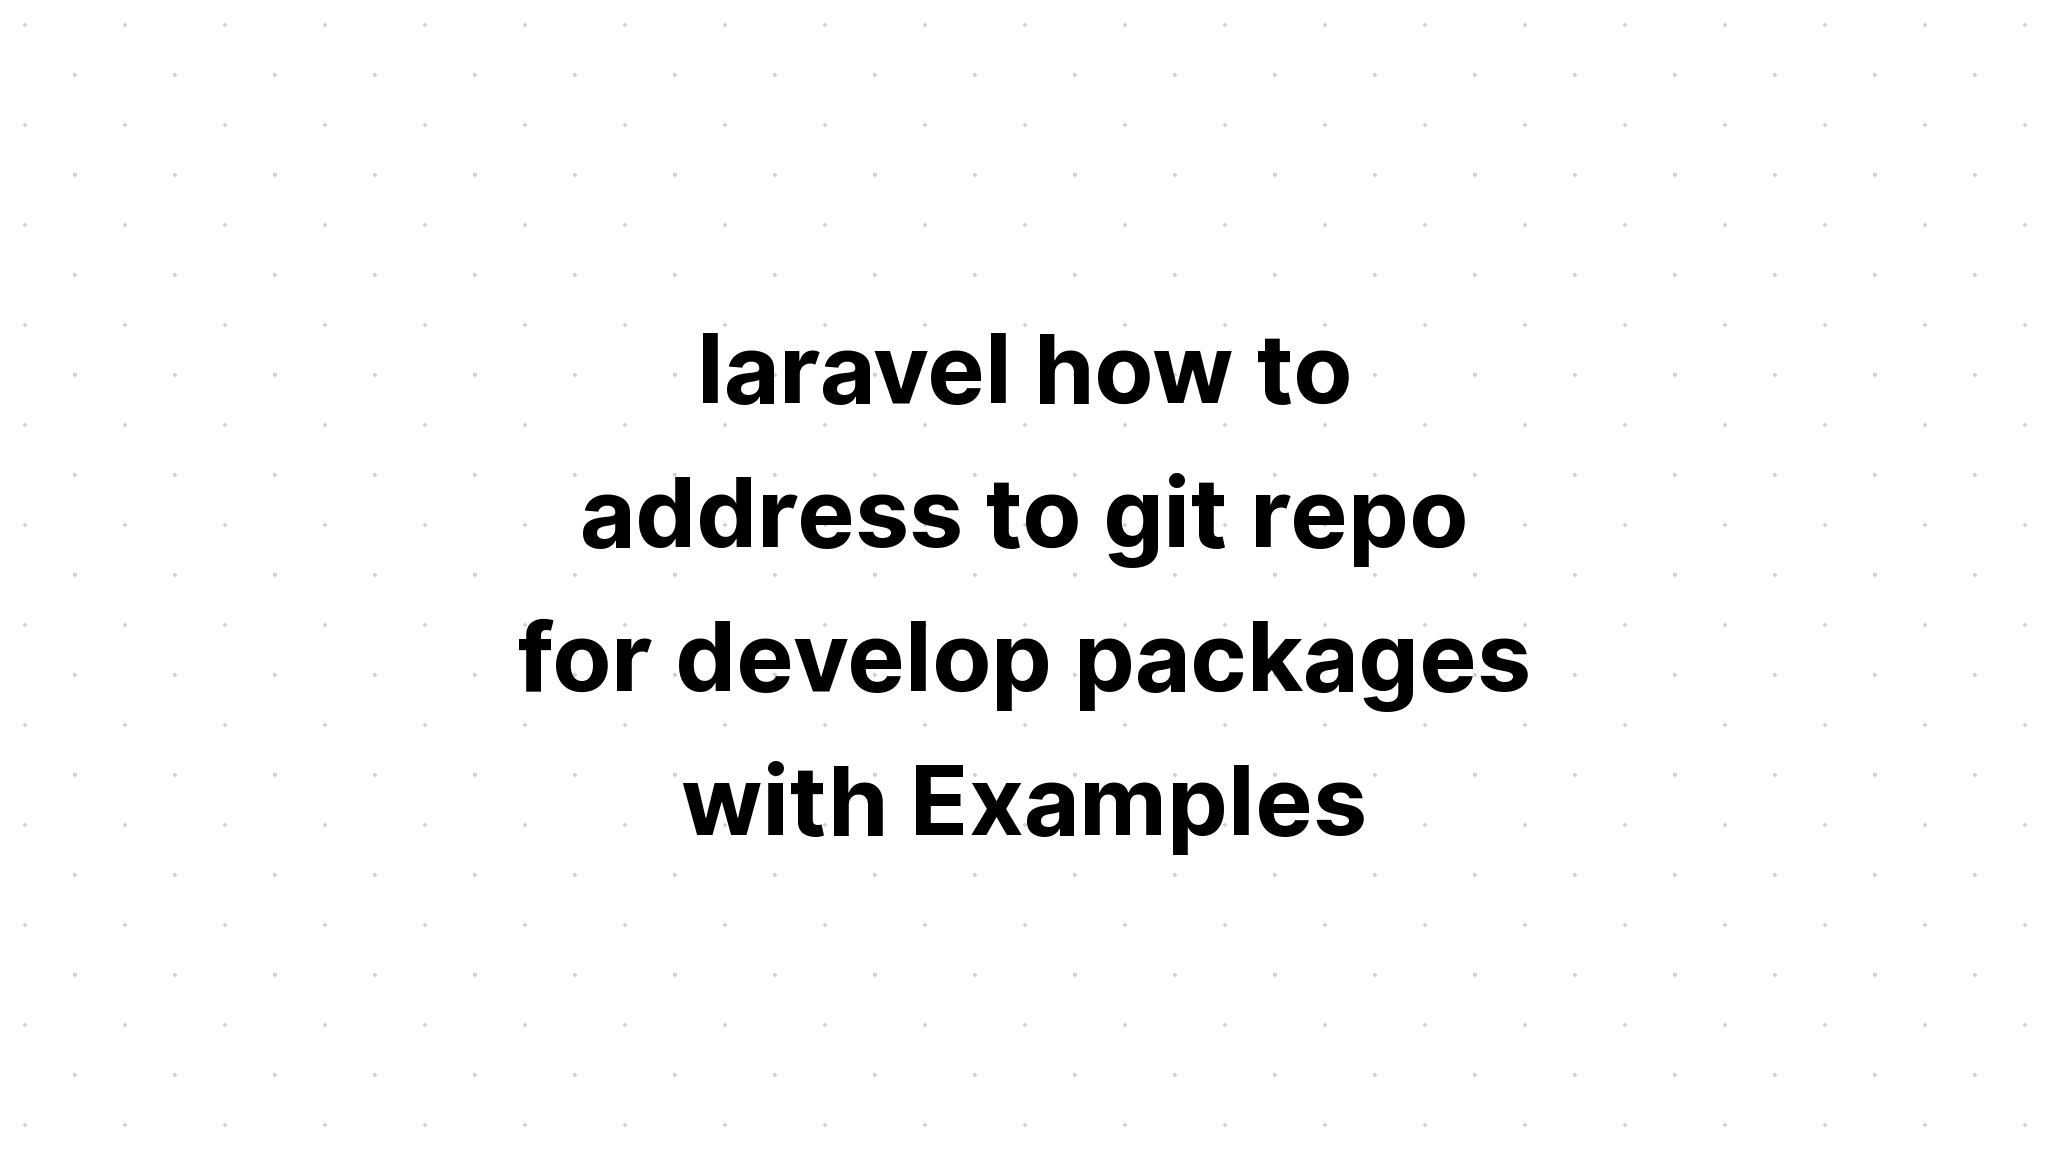 laravel cách giải quyết git repo để phát triển các gói với Ví dụ